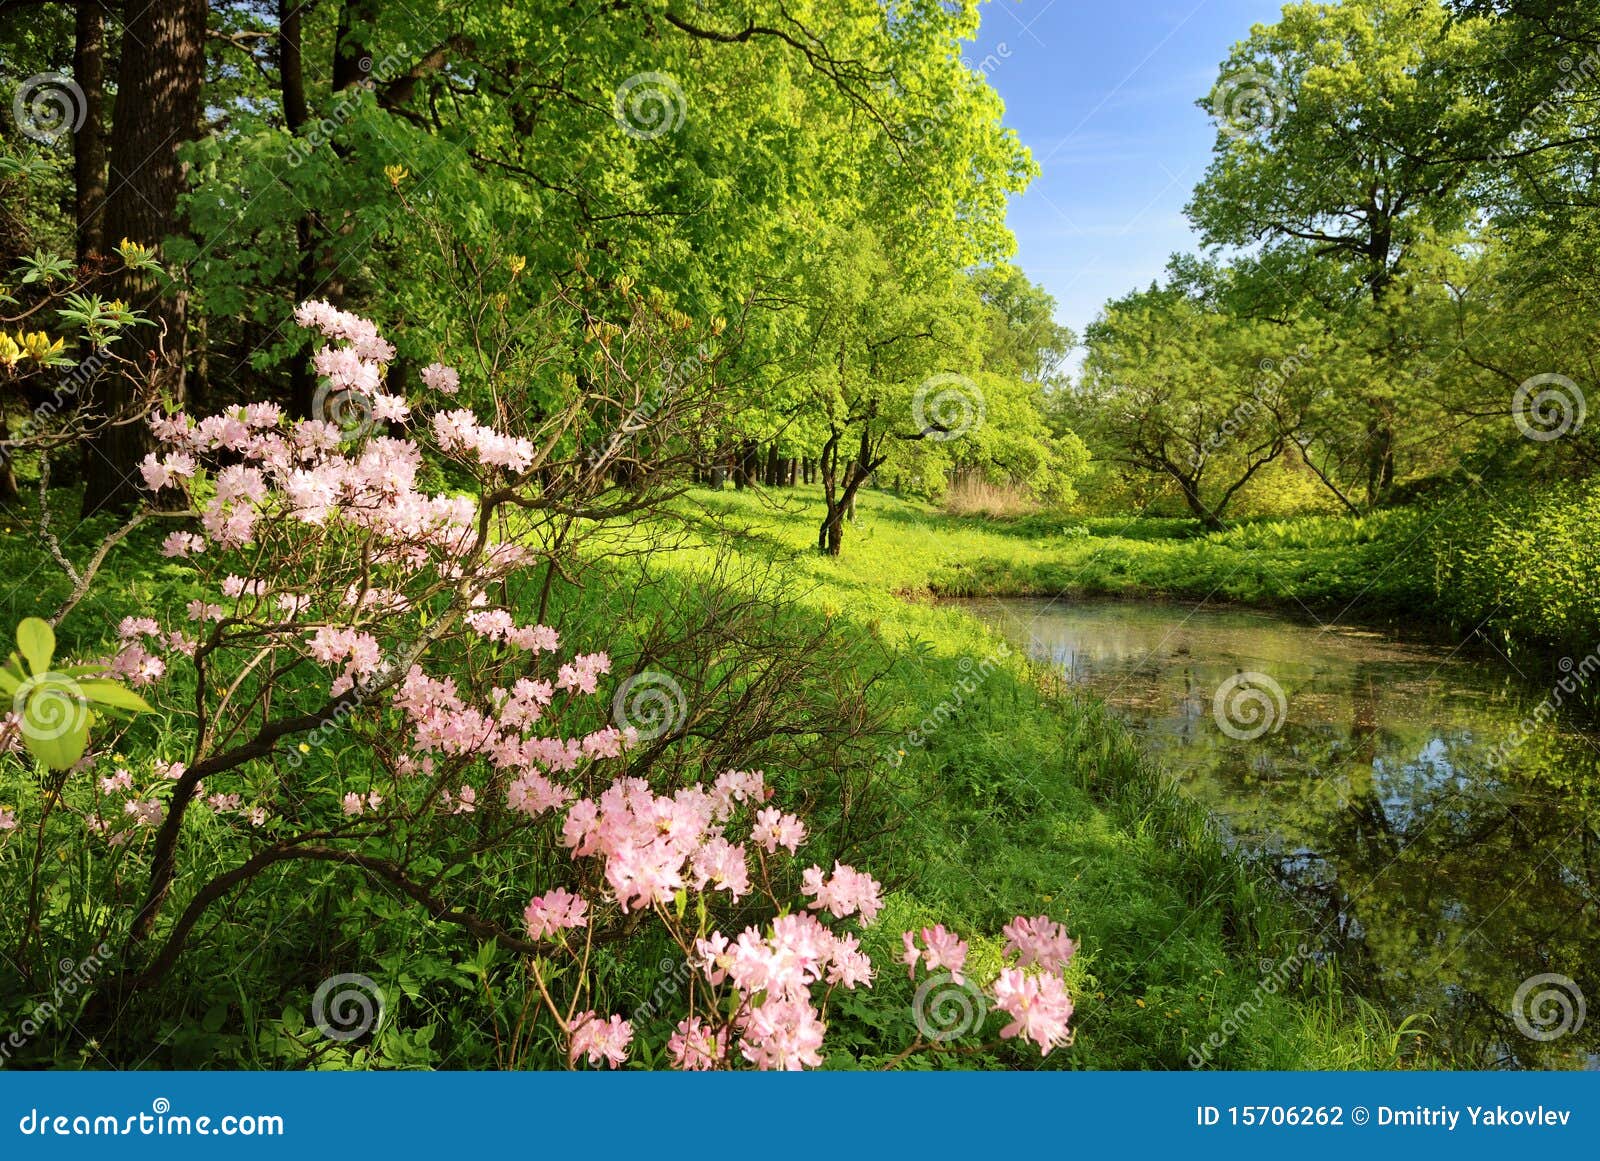 spring landscape with pond